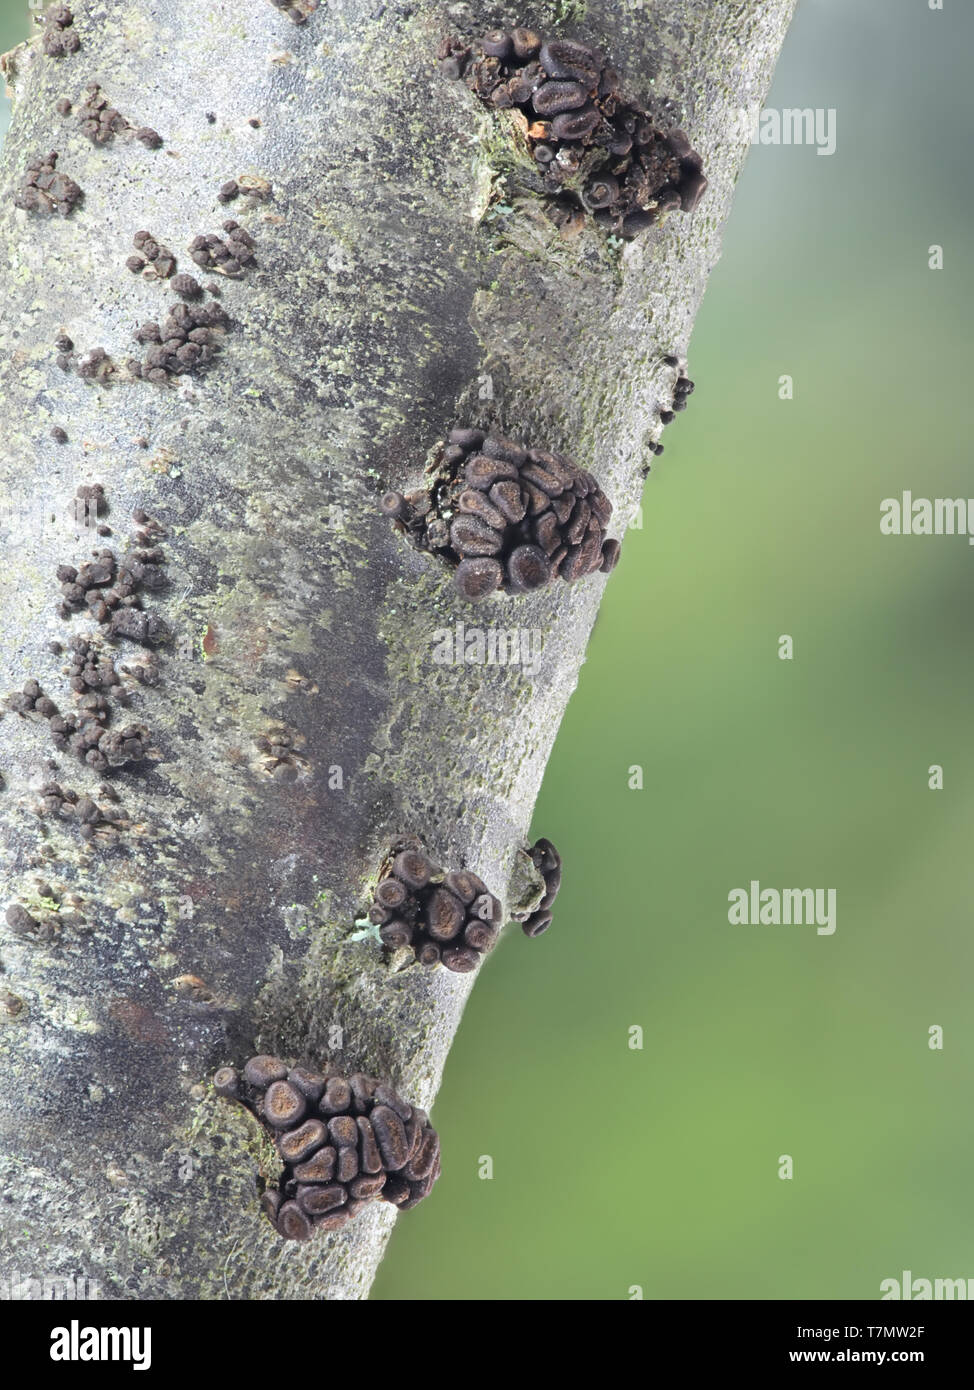 Chancre de curriculture, Pleonectria berolinensis, un champignon de printemps précoce qui pousse sur le groseille, Ribes rubrum Banque D'Images